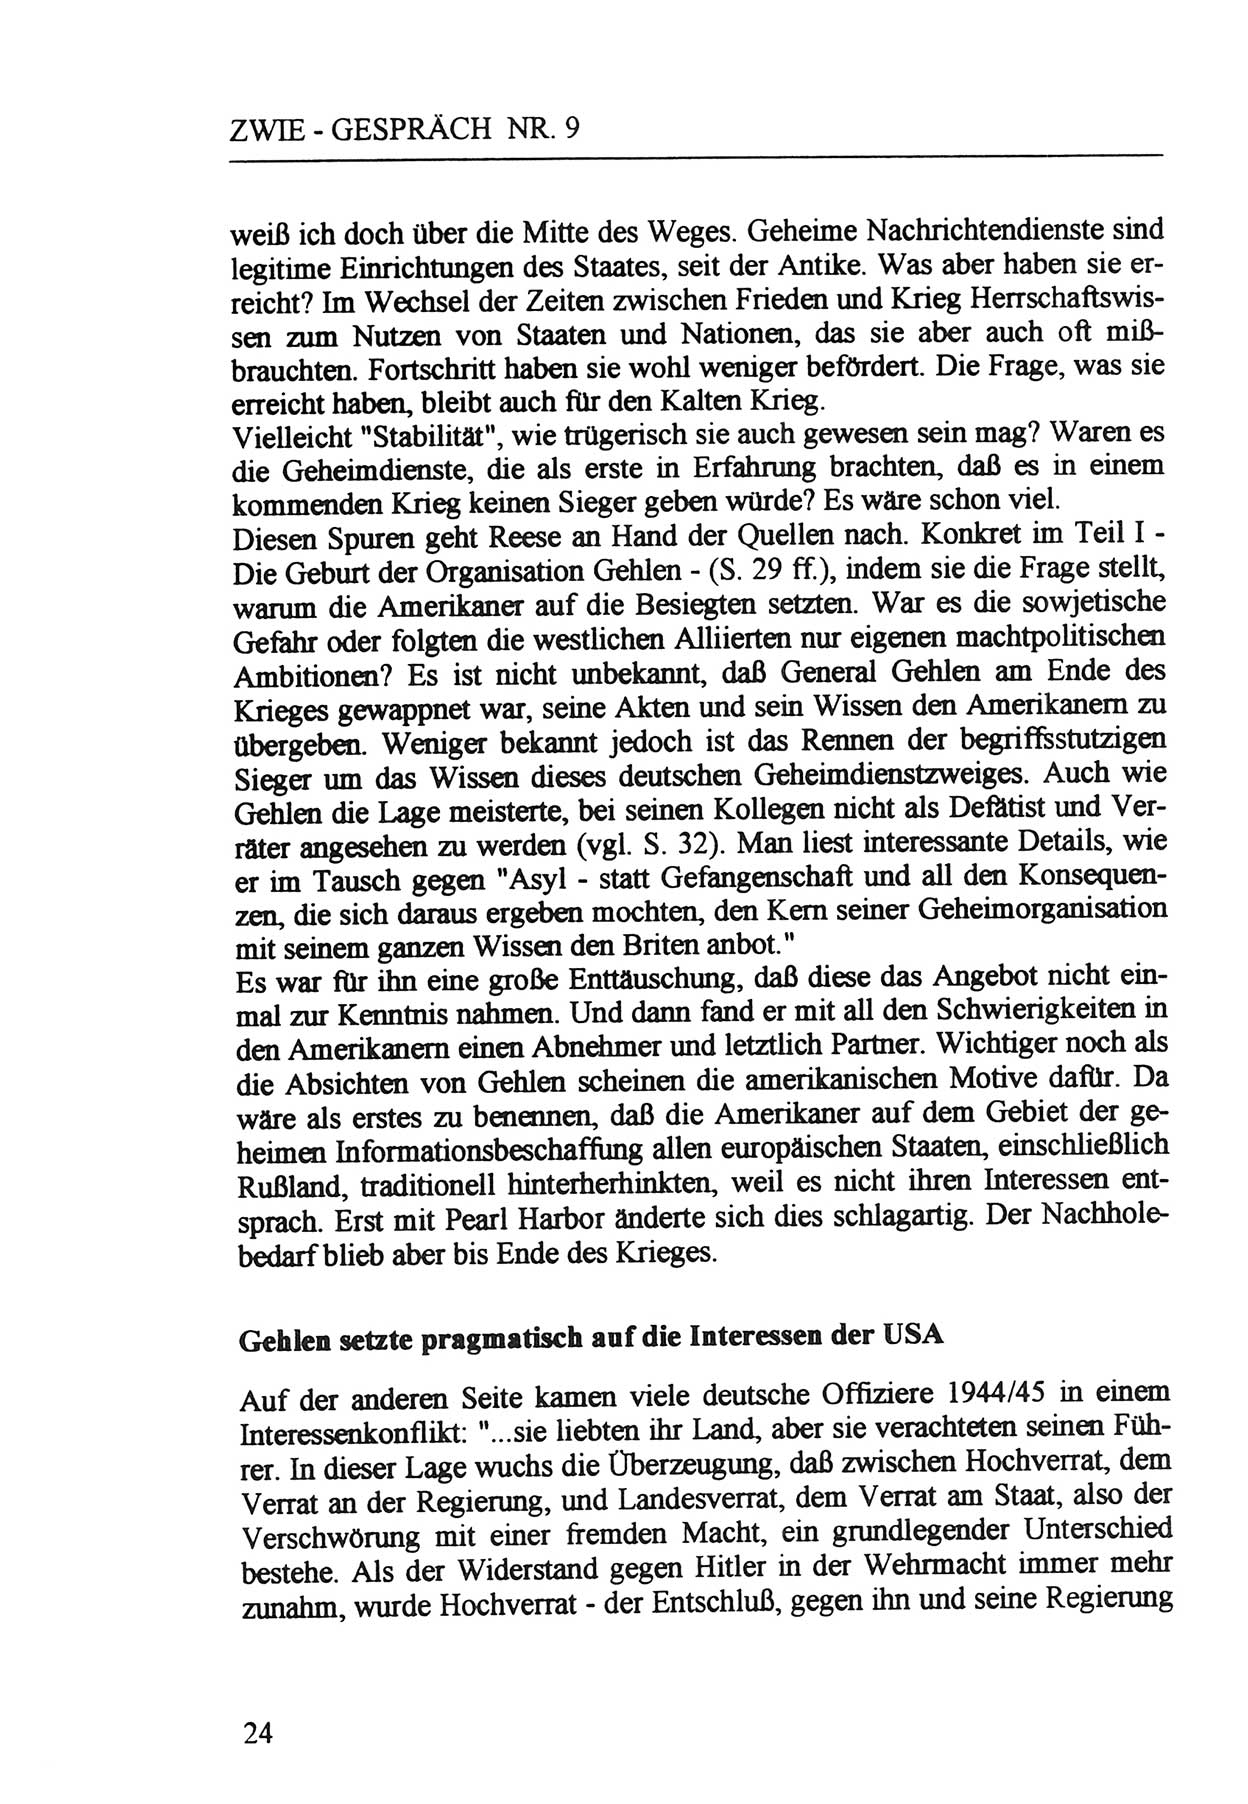 Zwie-Gespräch, Beiträge zur Aufarbeitung der Staatssicherheits-Vergangenheit [Deutsche Demokratische Republik (DDR)], Ausgabe Nr. 9, Berlin 1992, Seite 24 (Zwie-Gespr. Ausg. 9 1992, S. 24)